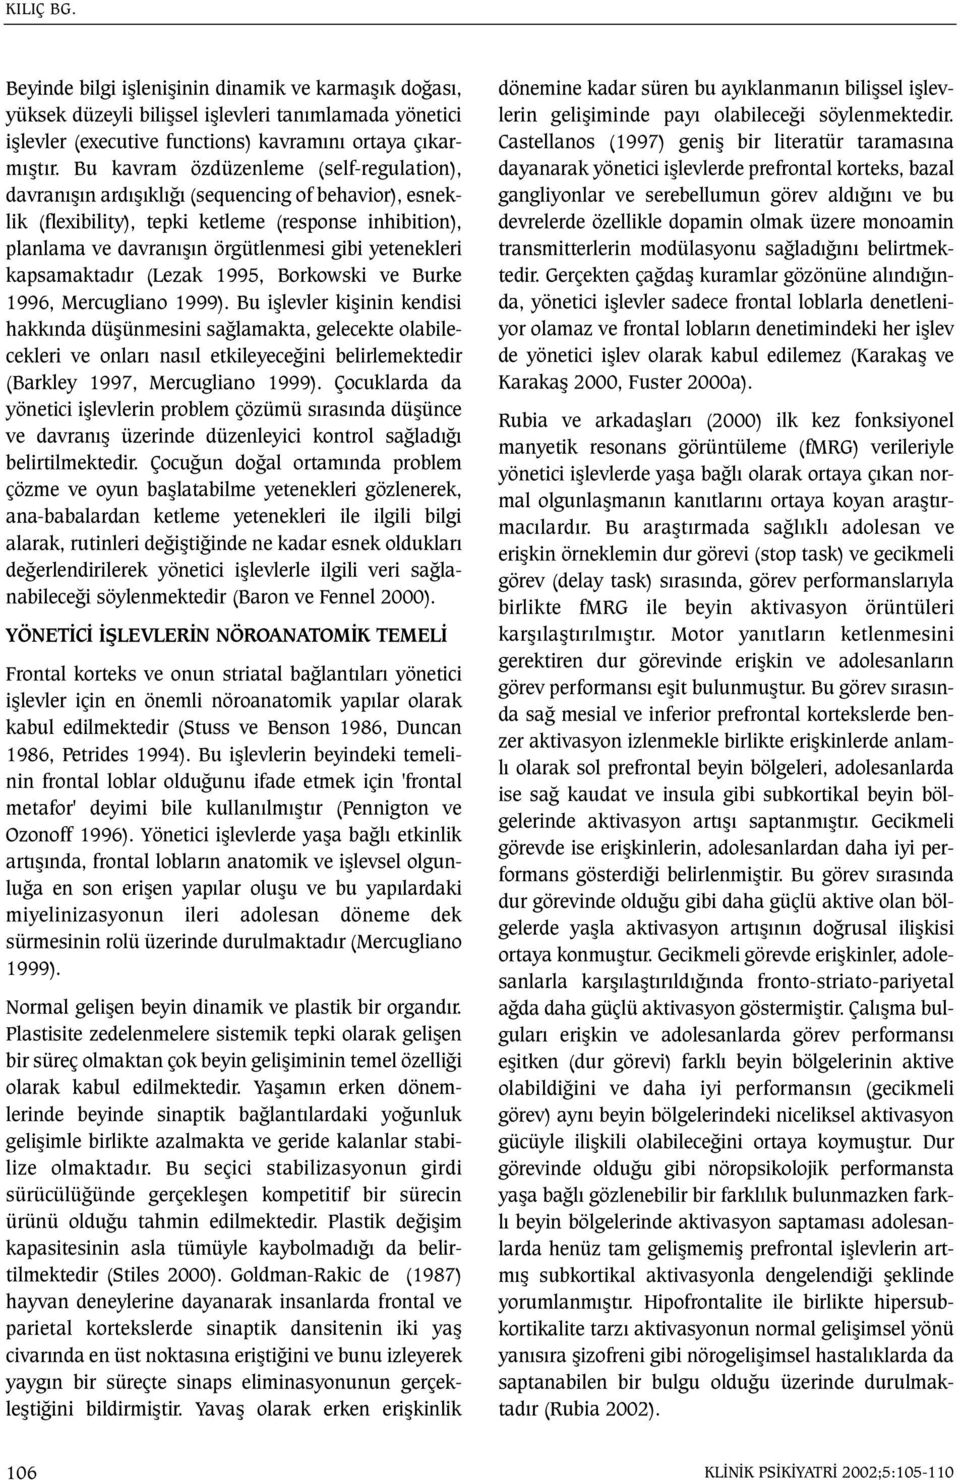 yetenekleri kapsamaktadýr (Lezak 1995, Borkowski ve Burke 1996, Mercugliano 1999).